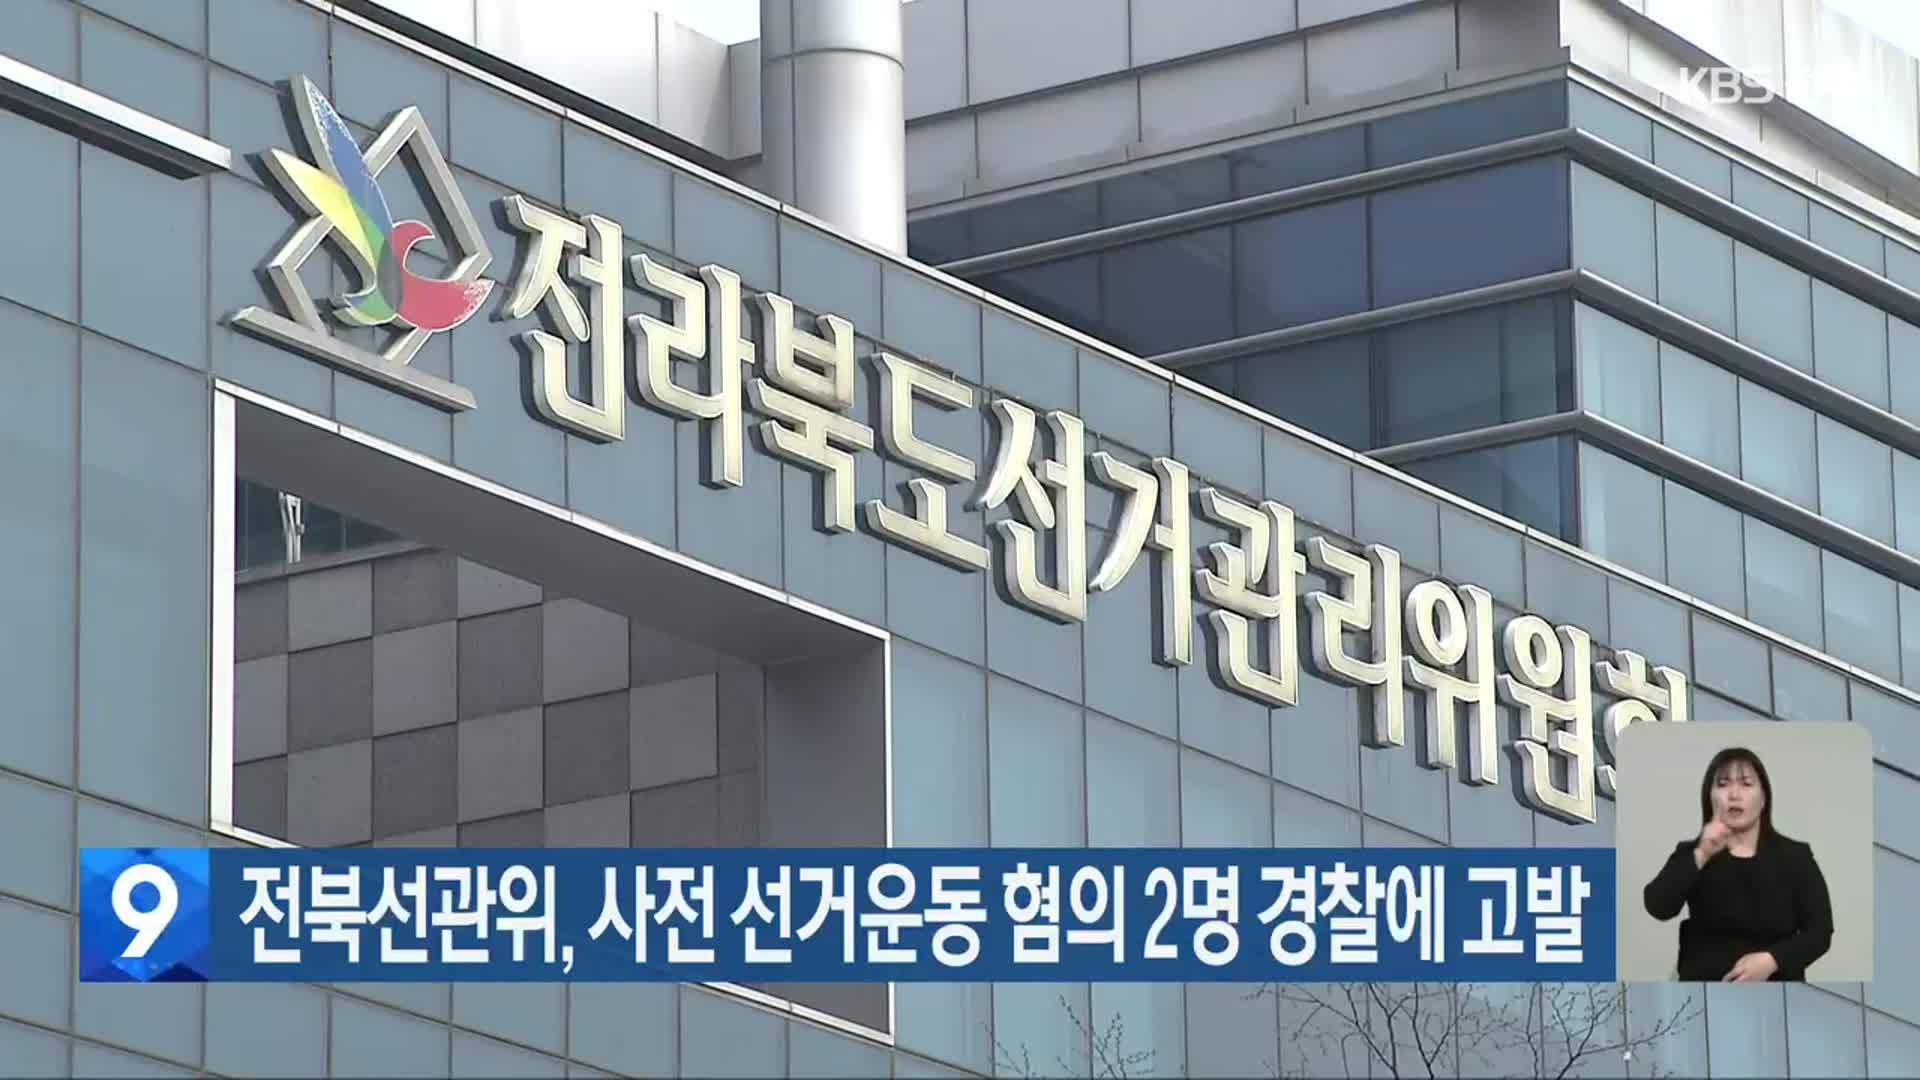 전북선관위, 사전 선거운동 혐의 2명 경찰에 고발